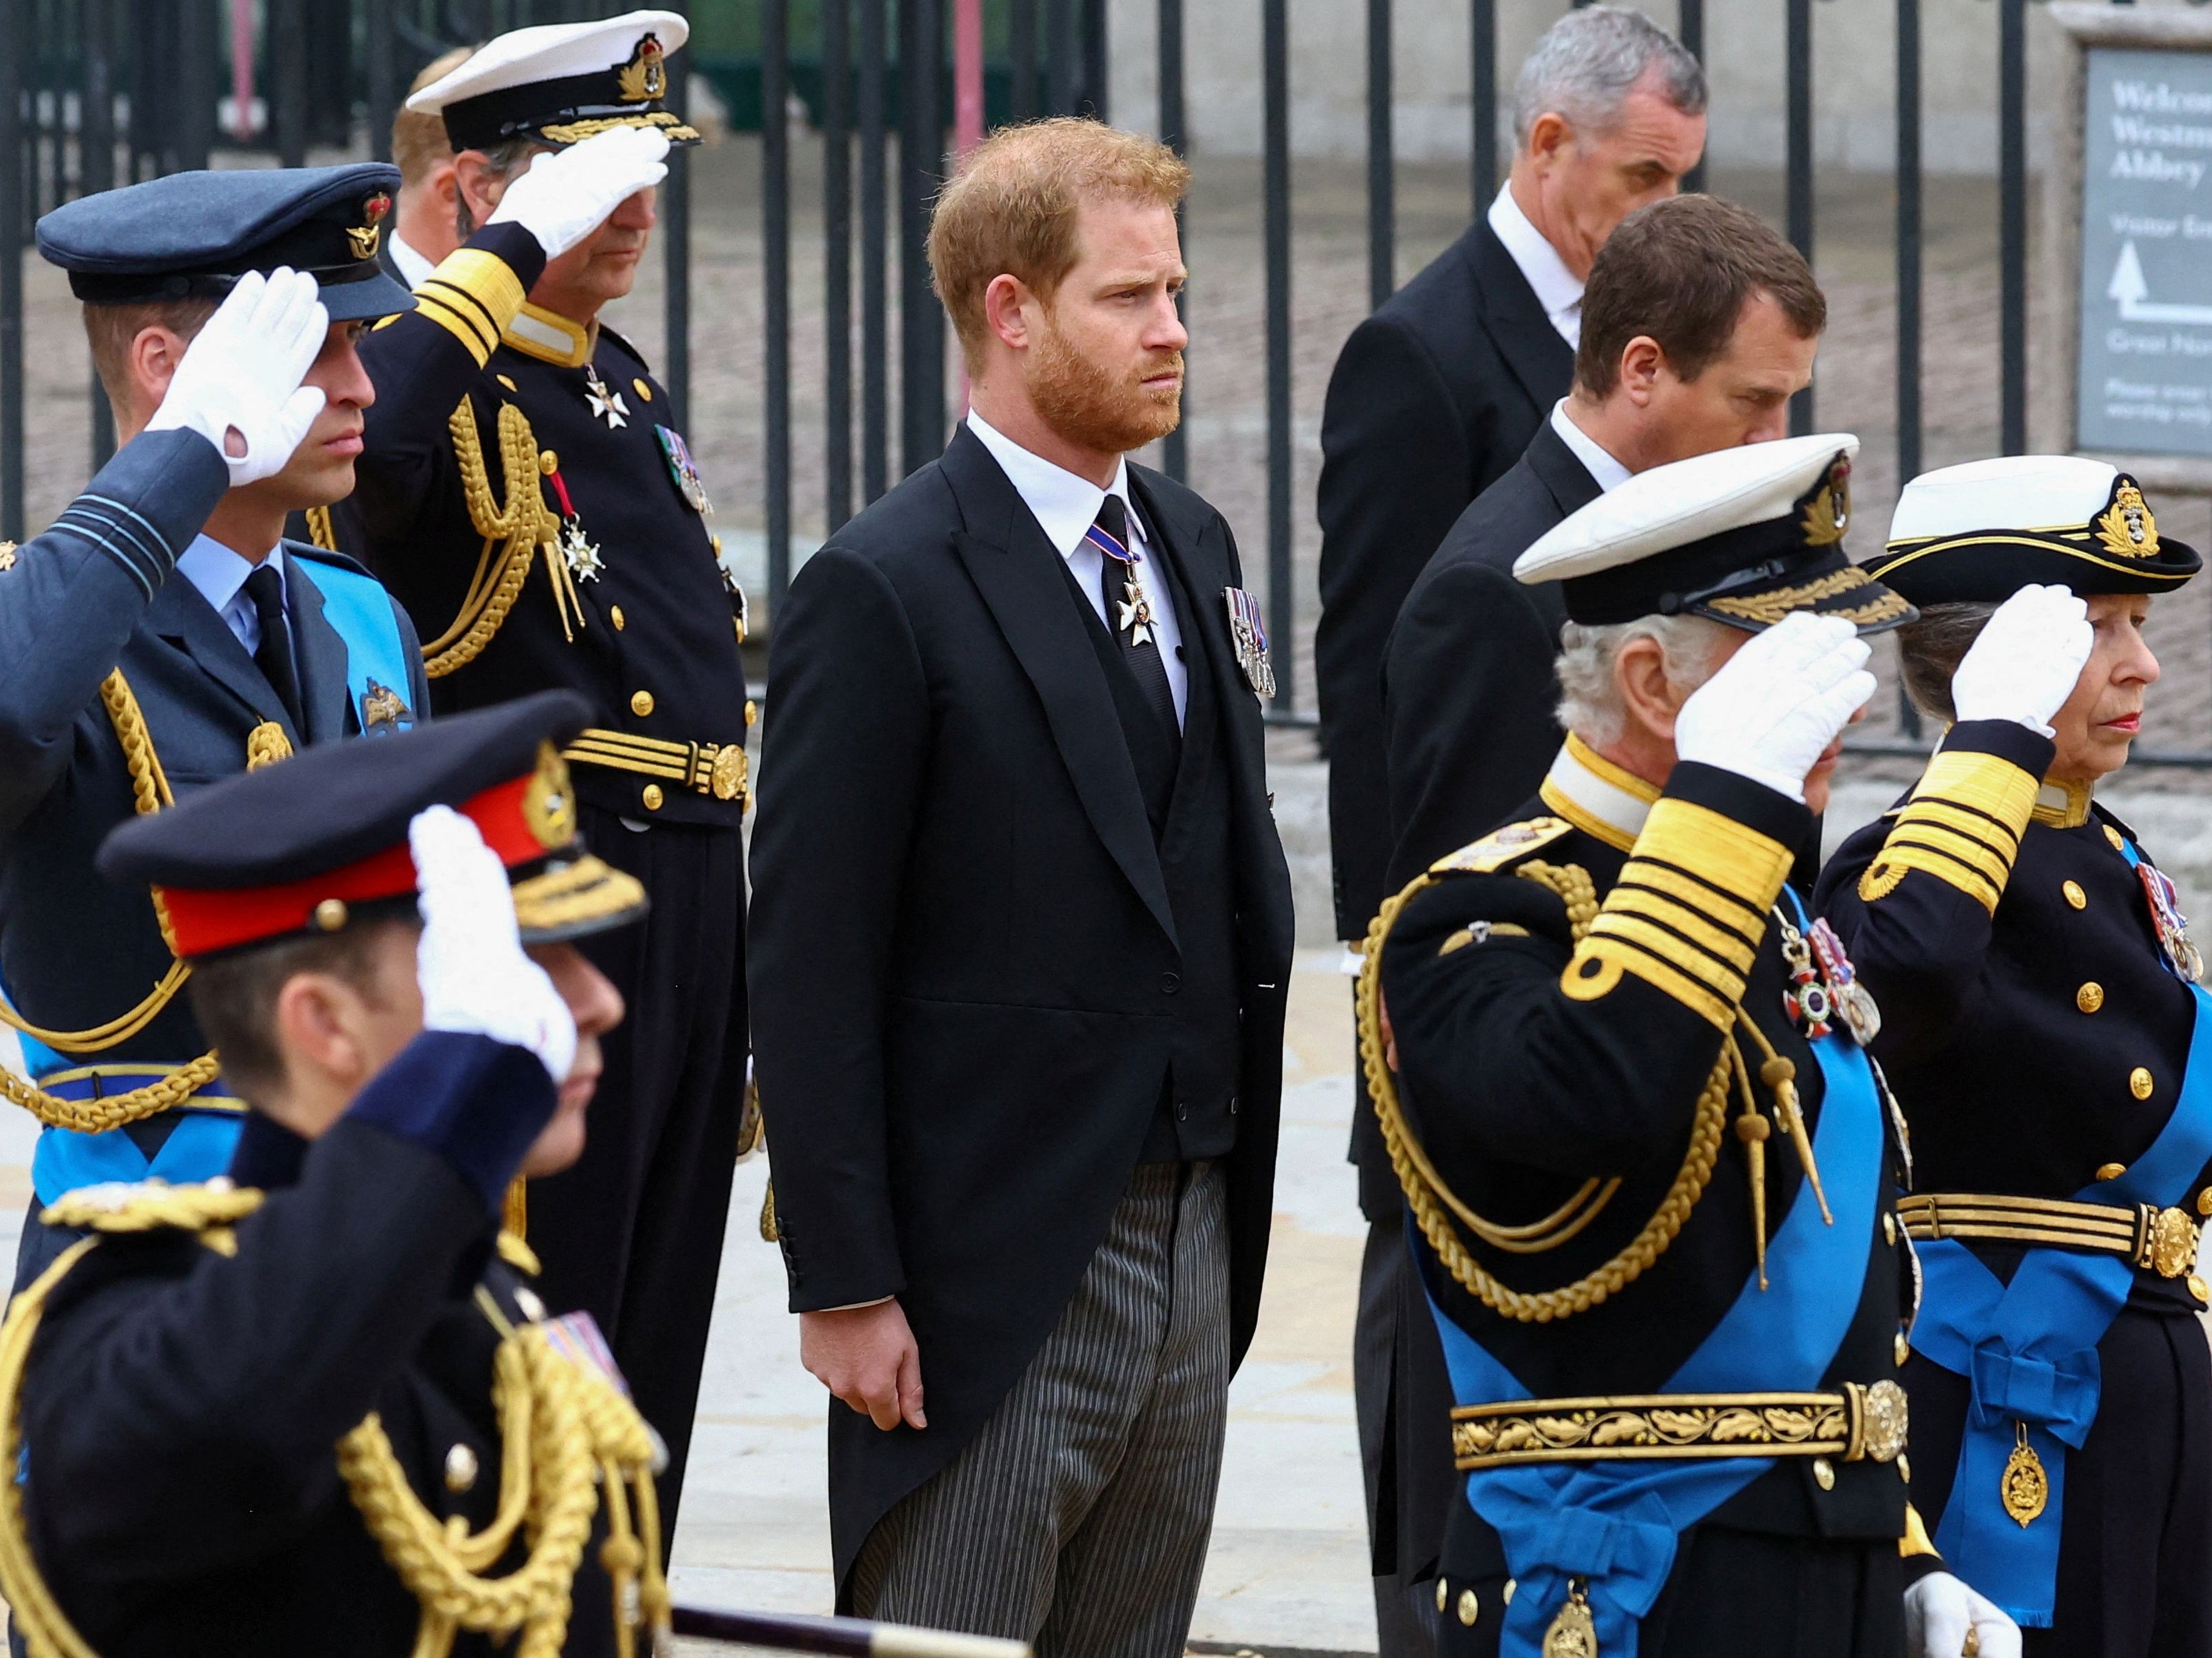 El príncipe Harry, duque de Sussex, junto al rey Carlos III, la princesa Anne, princesa real, y el príncipe Guillermo, príncipe de Gales, mientras saludan en el funeral de Estado de la reina Isabel II